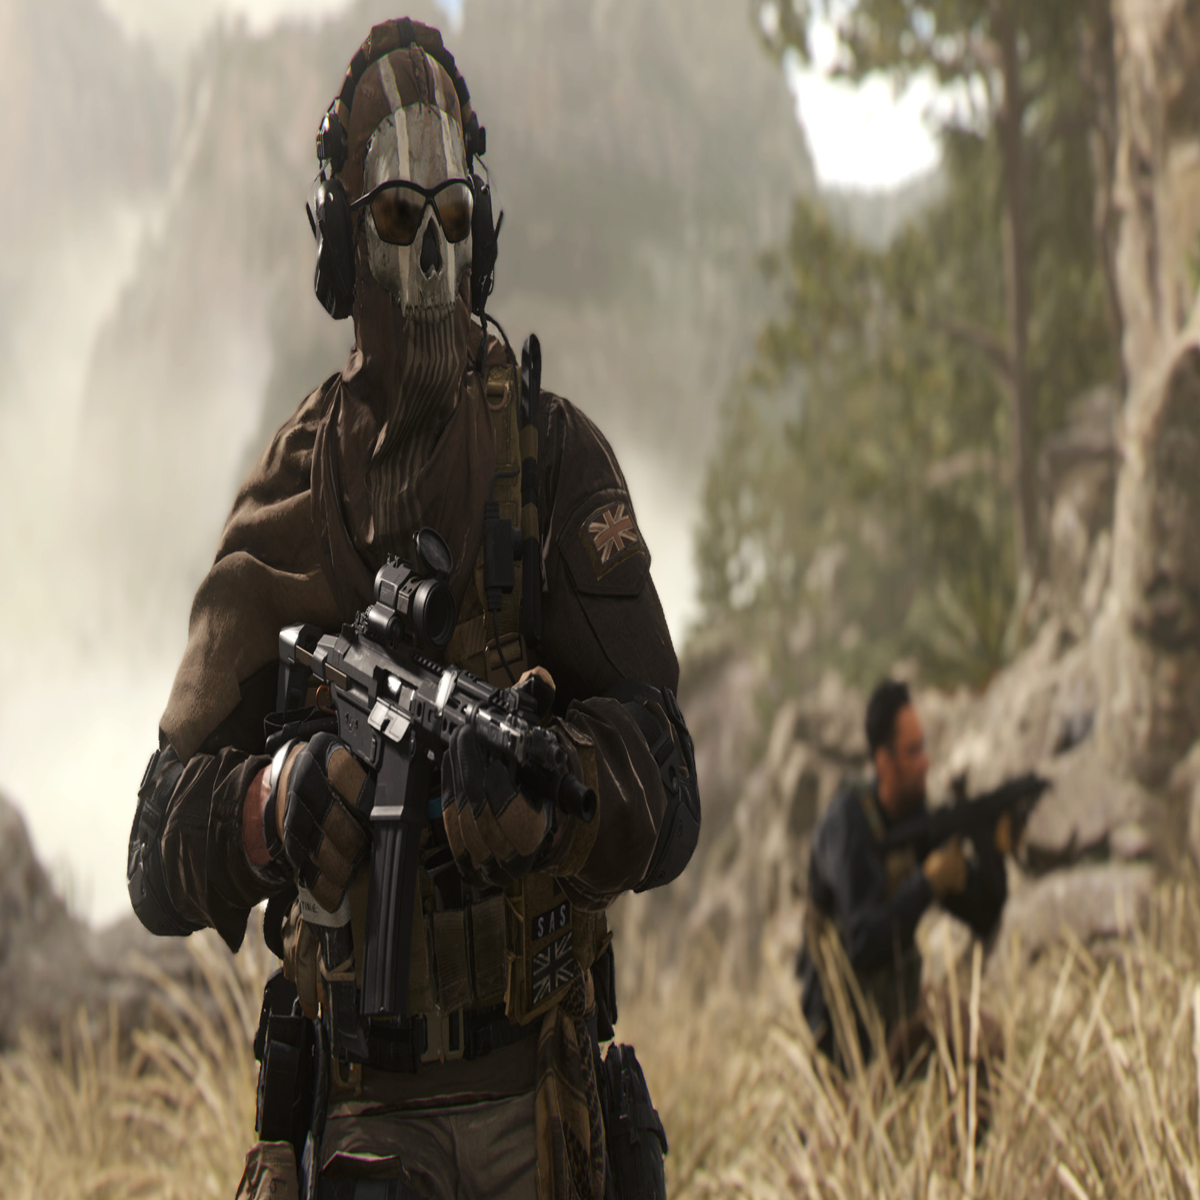 CoD Modern Warfare 2 release date